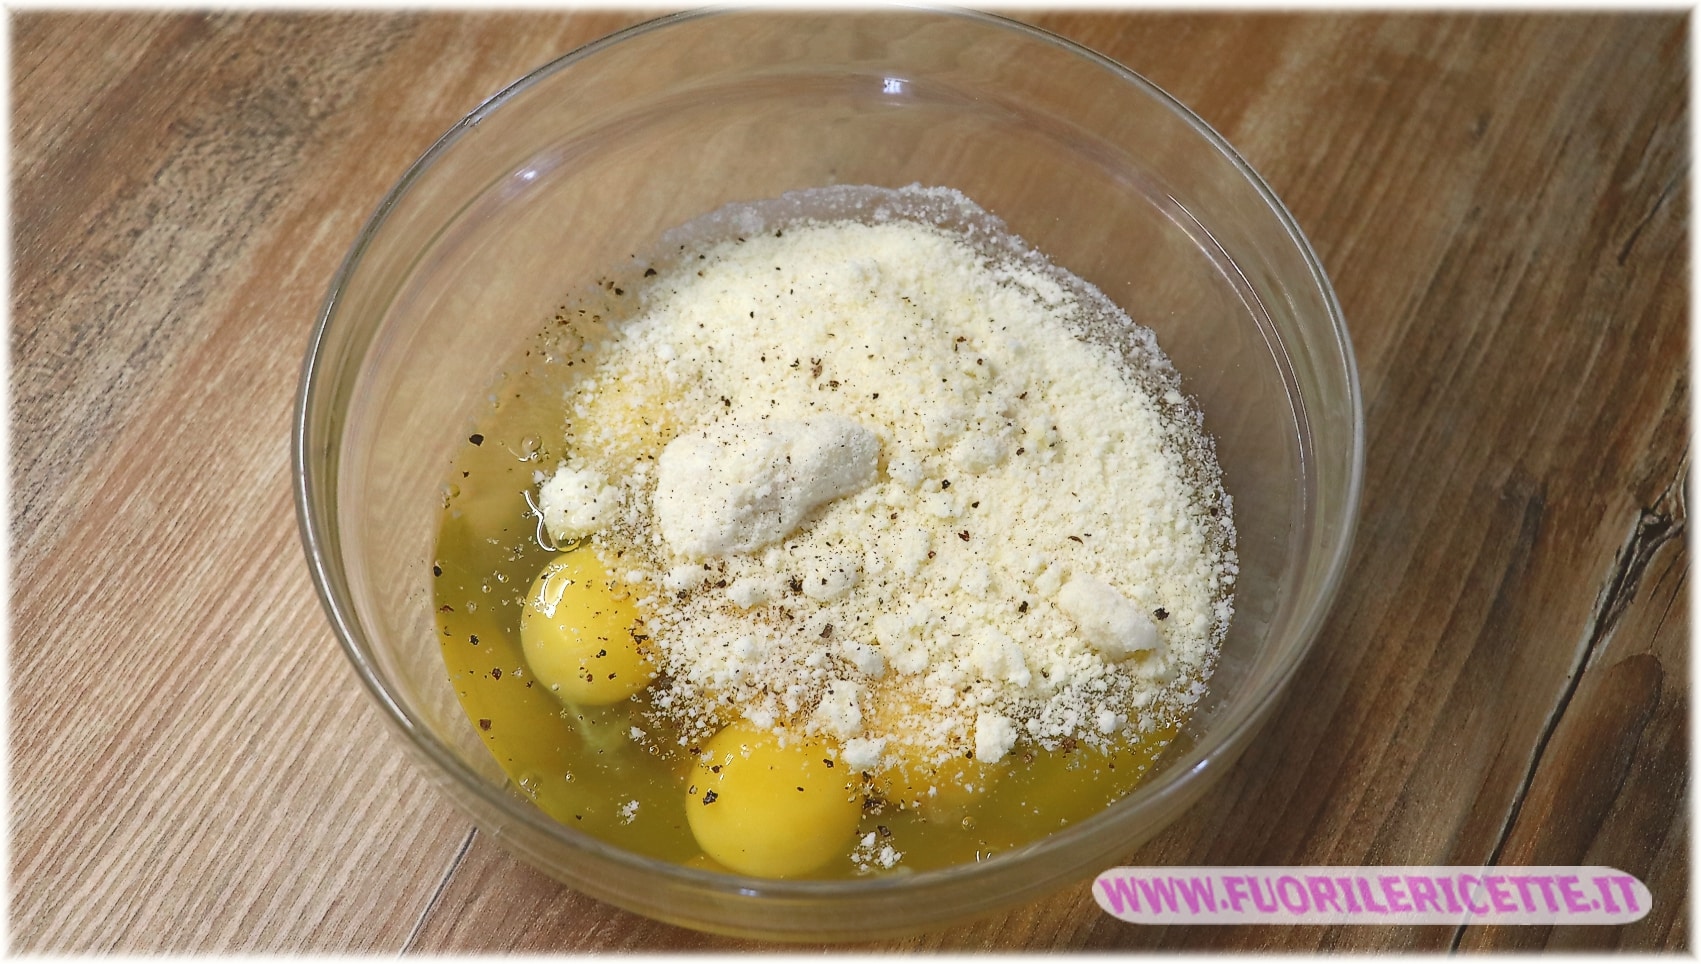 Rompere le uova in una terrina, sbatterle con una forchetta insieme ad un pò di sale, aggiungere anche il formaggio e il pepe.